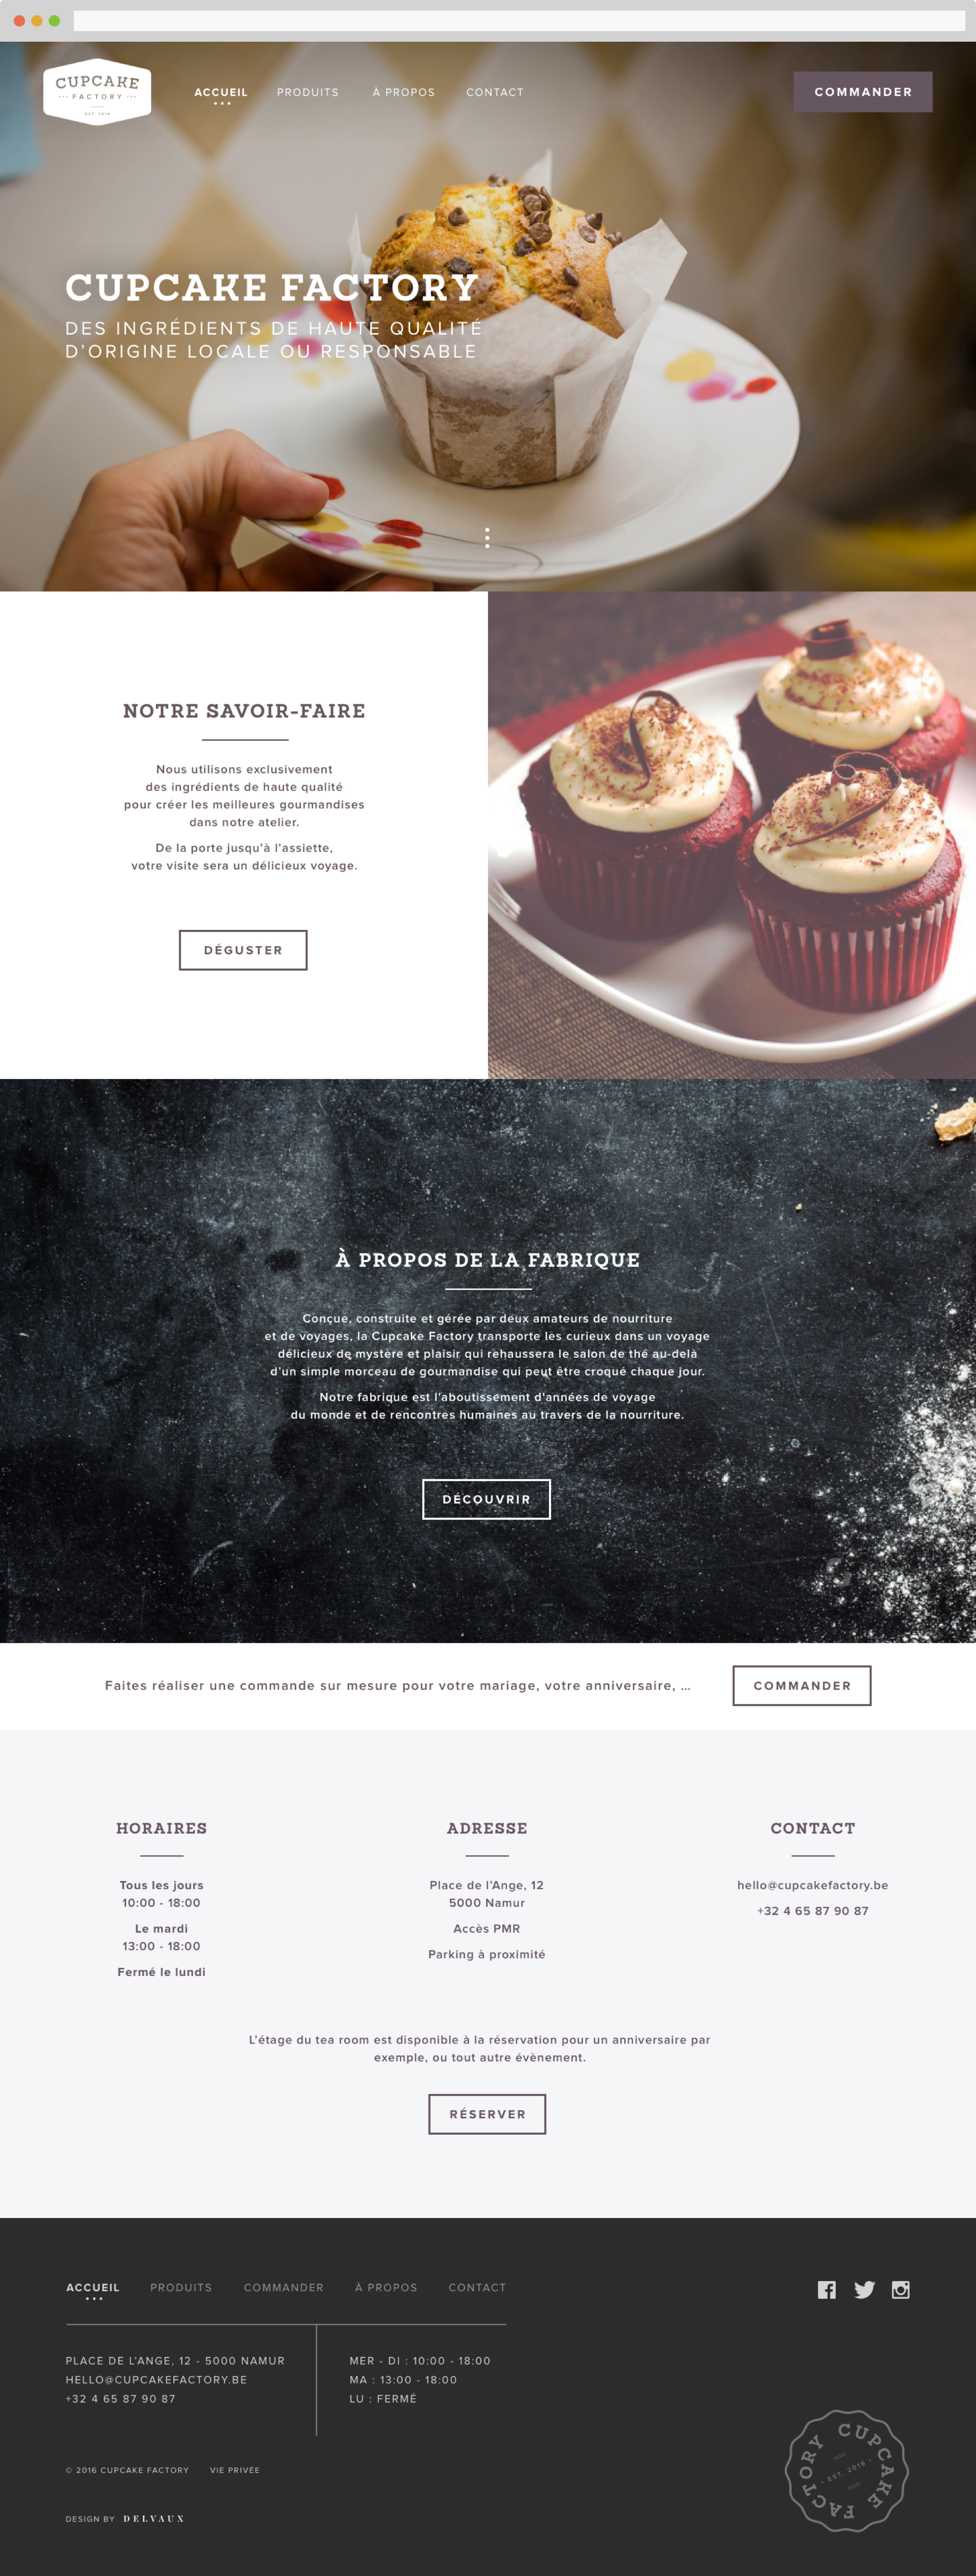 Desktop view of Cupcake Factory website